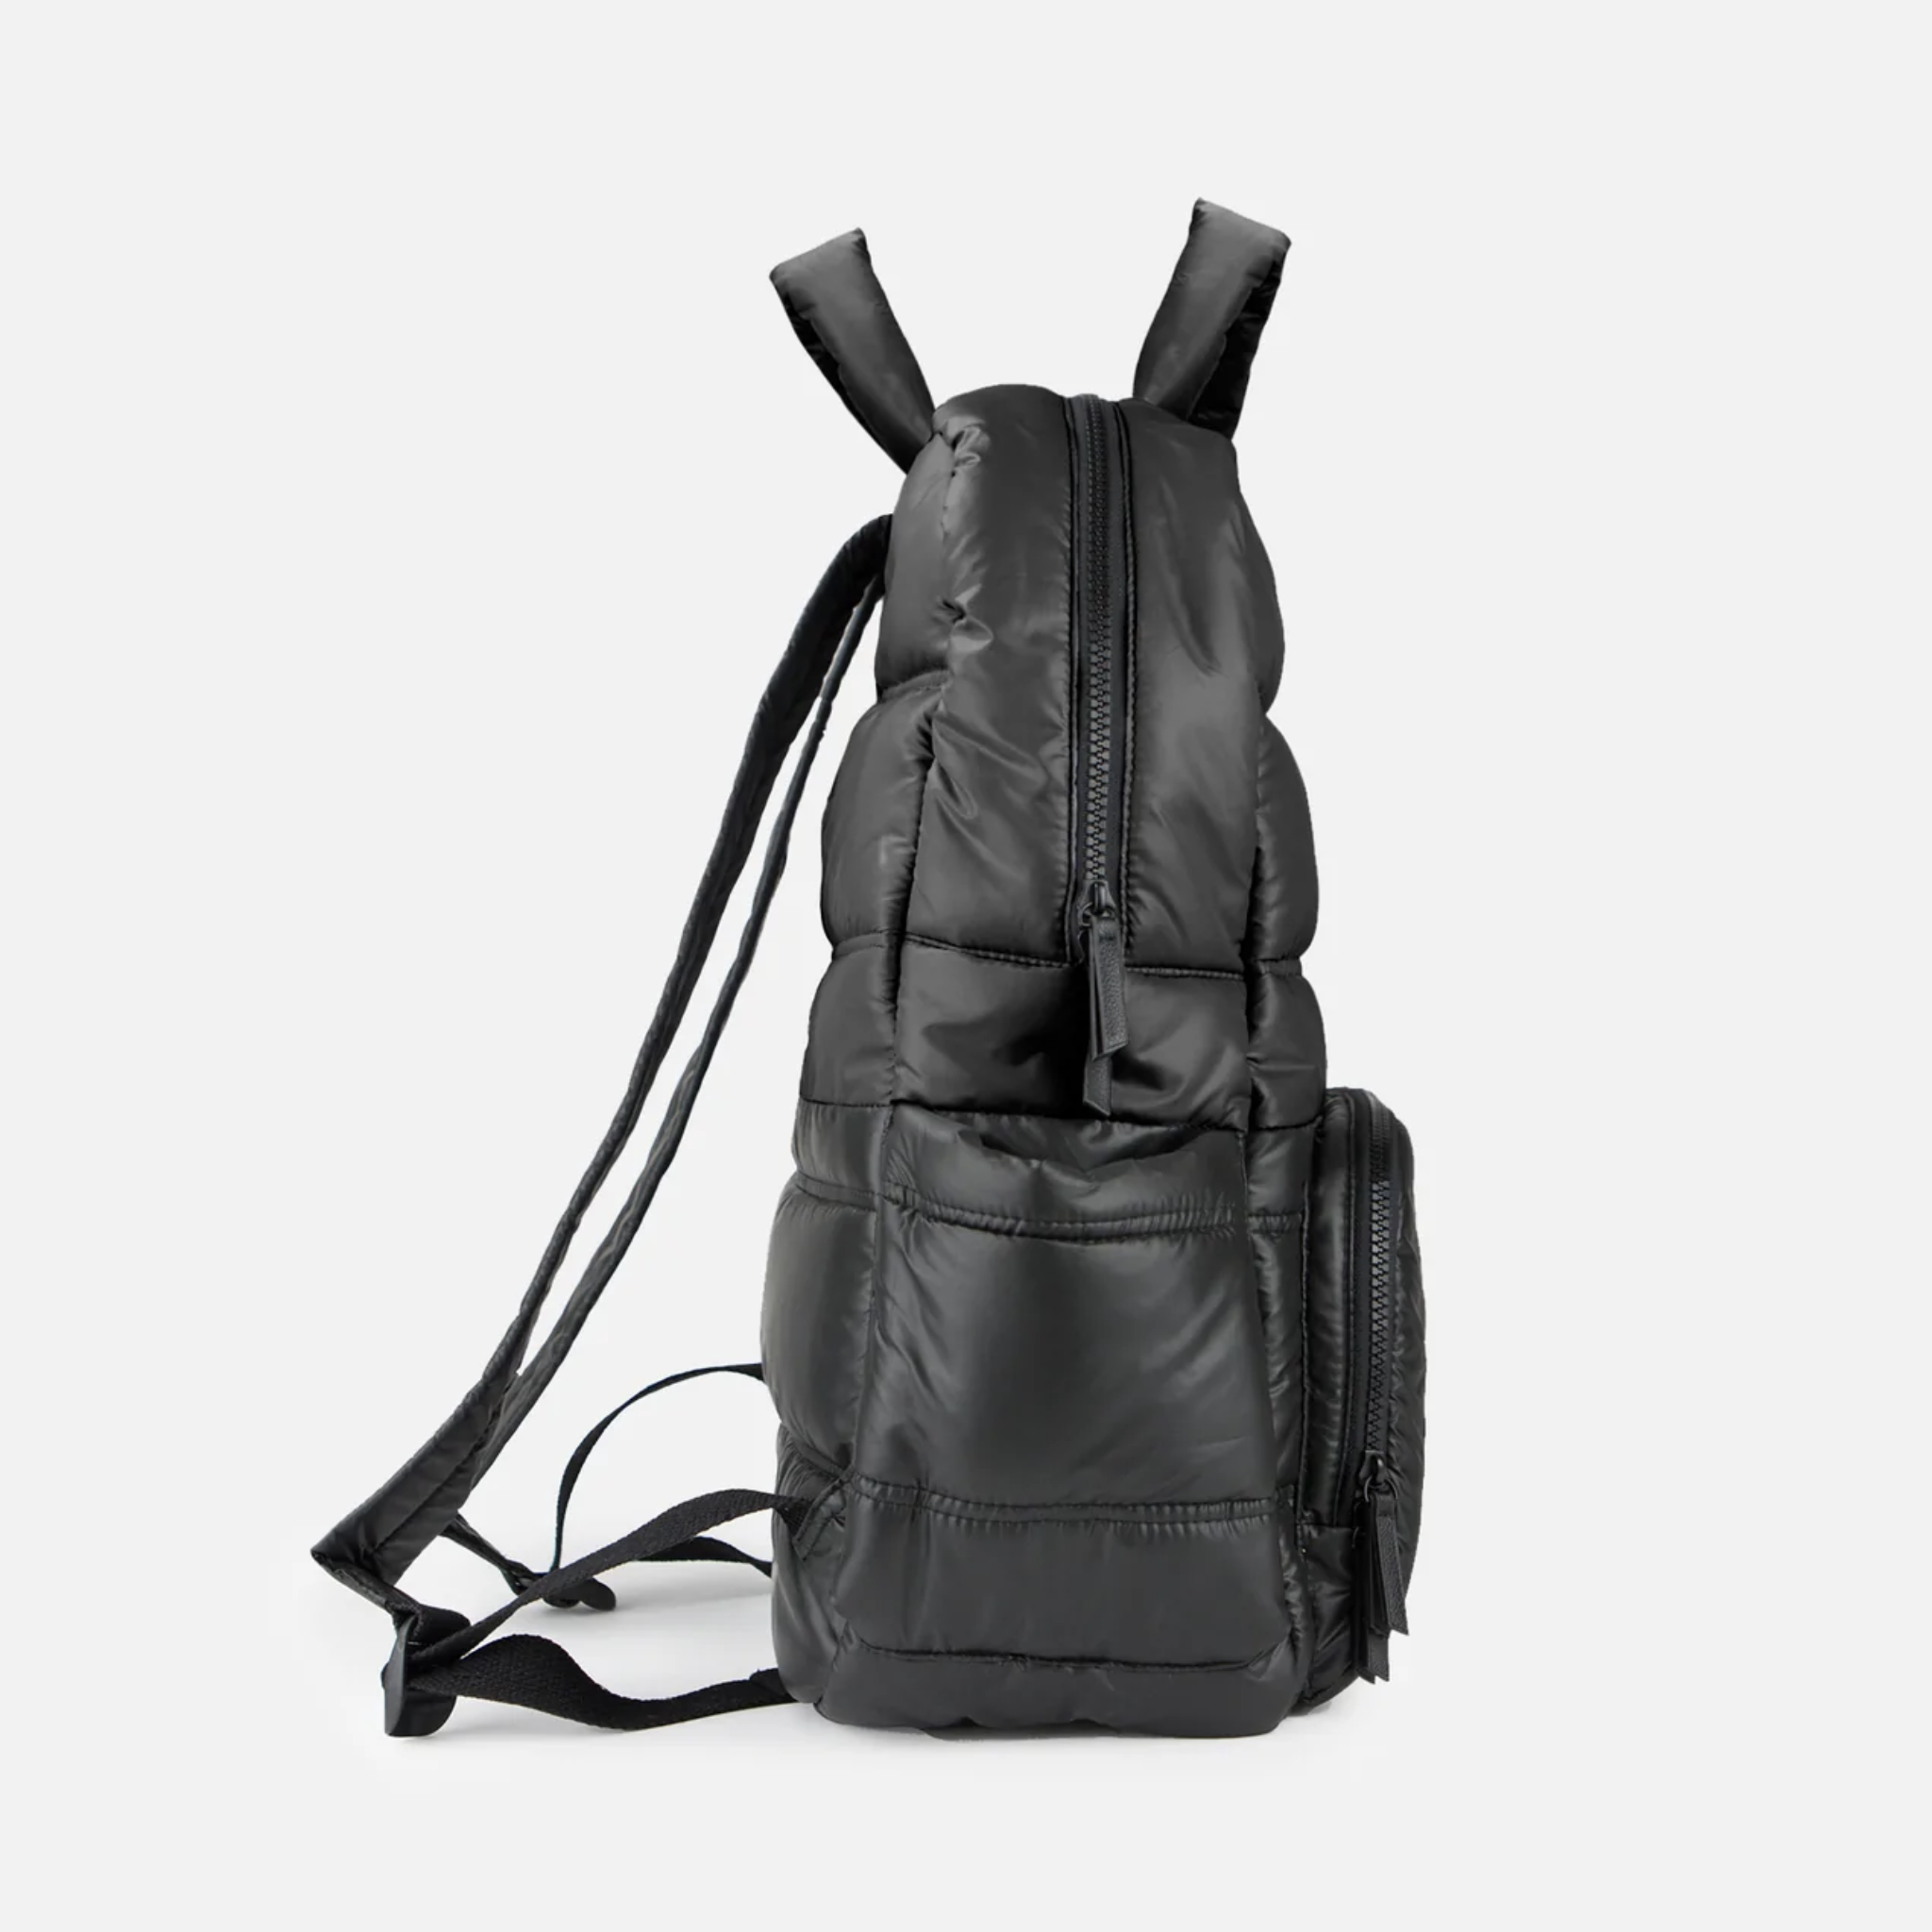 BK718 BACKPACK - Everyday Backpack